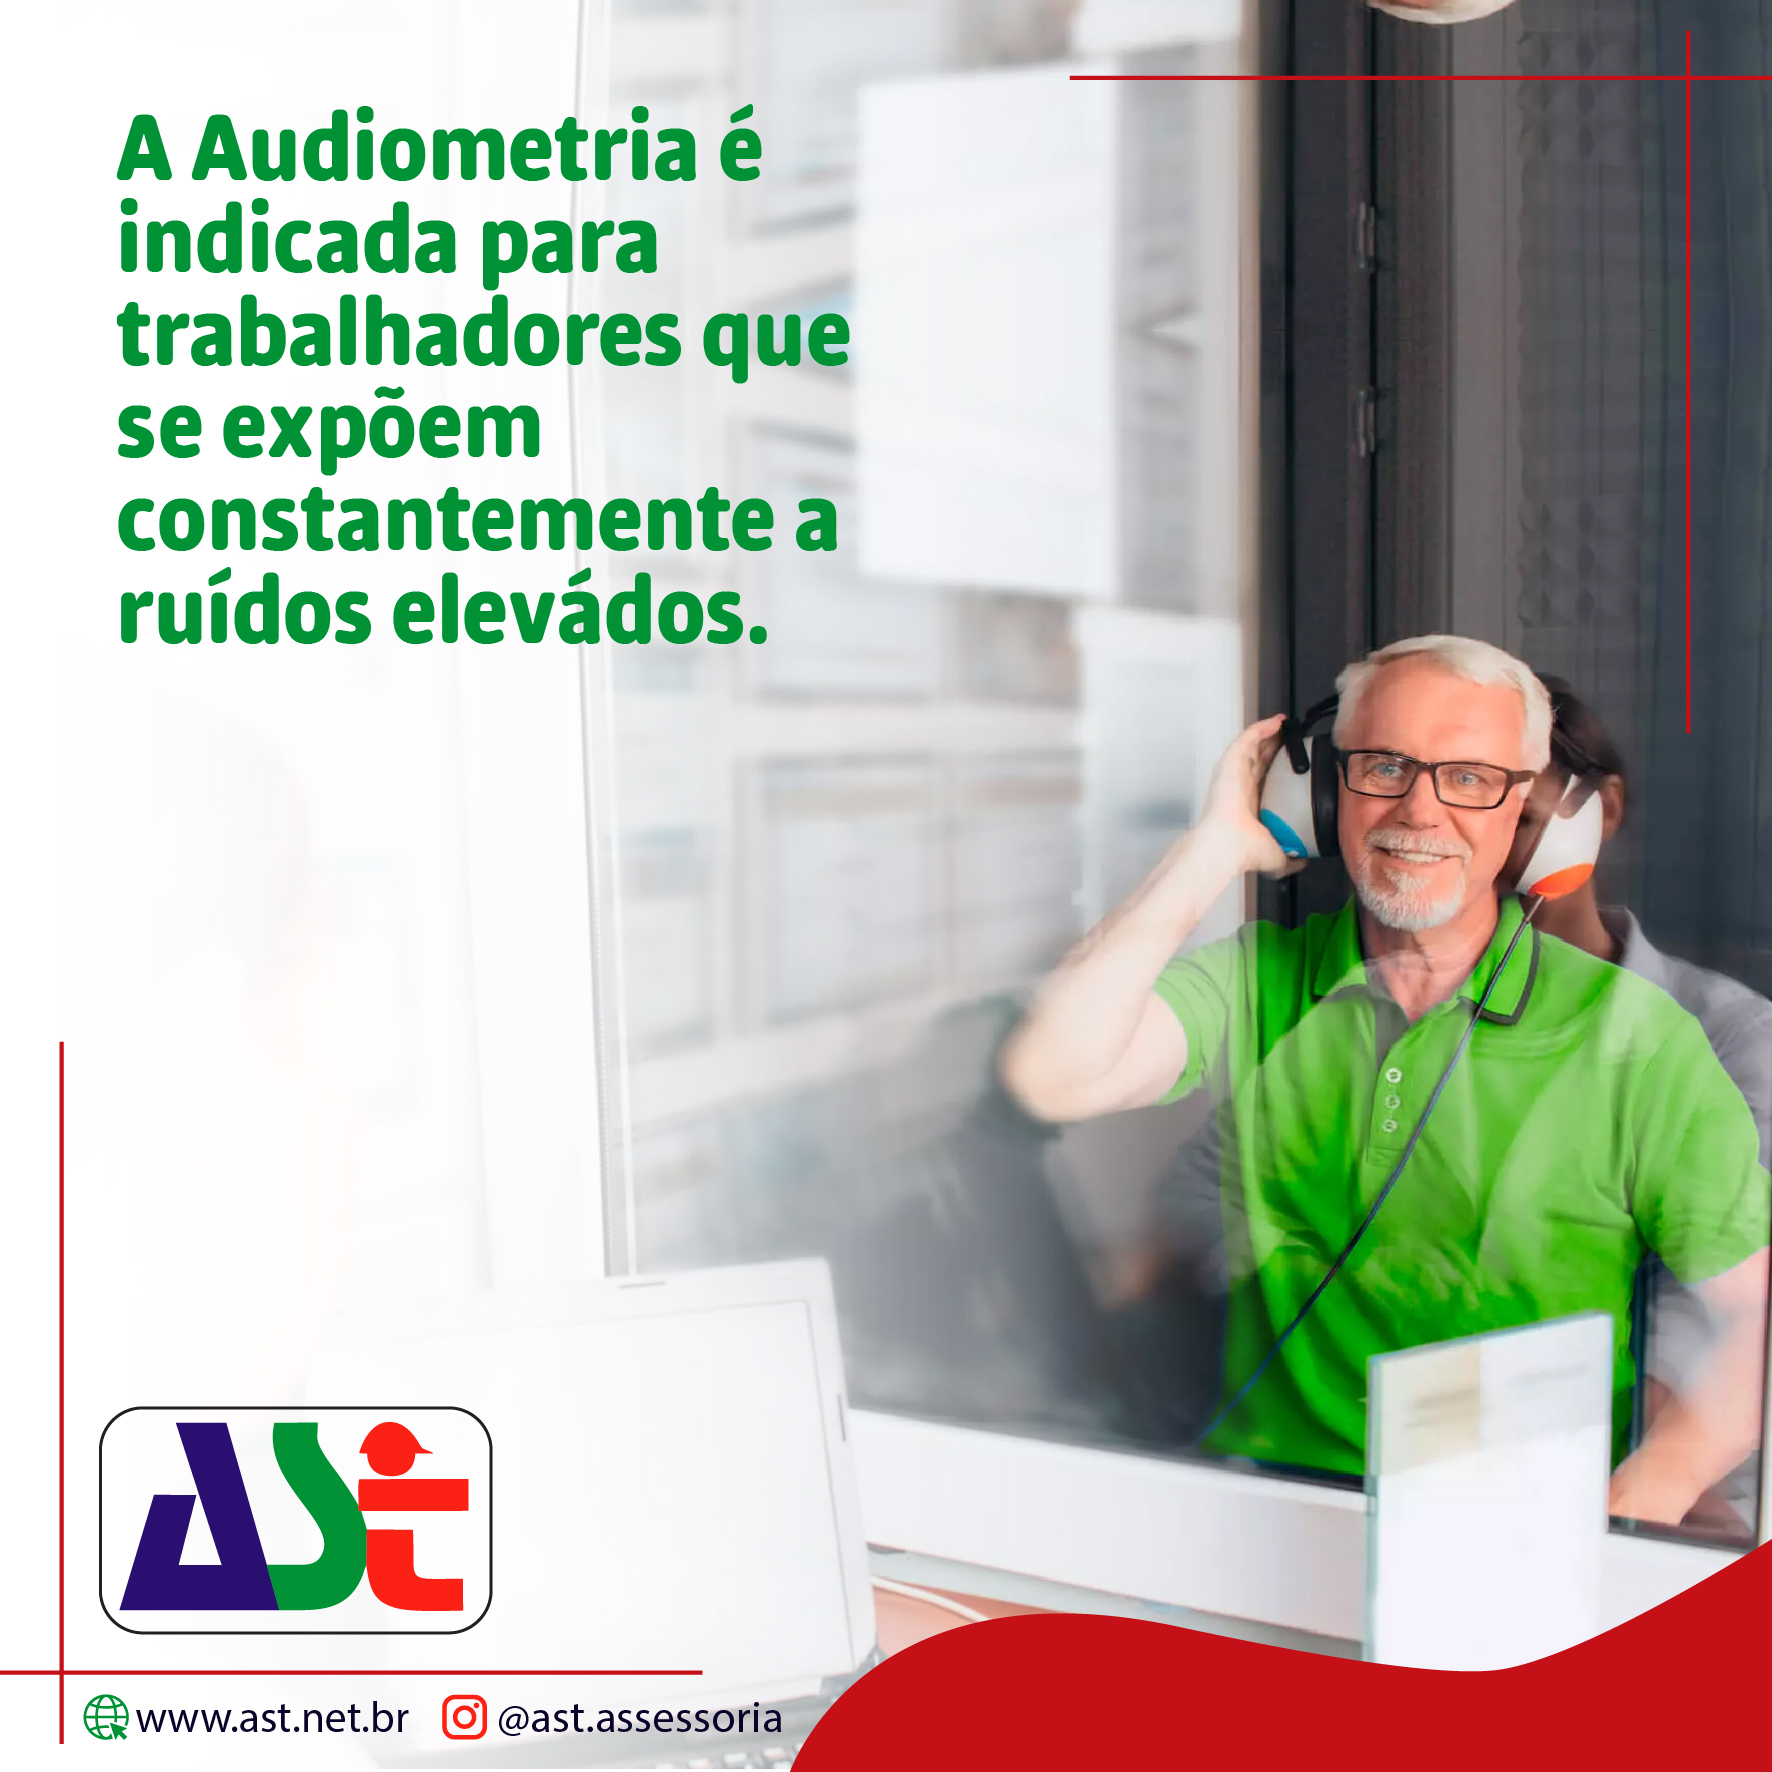 A Audiometria é indicada para trabalhadores que se expõem constantemente a ruídos elevádos.